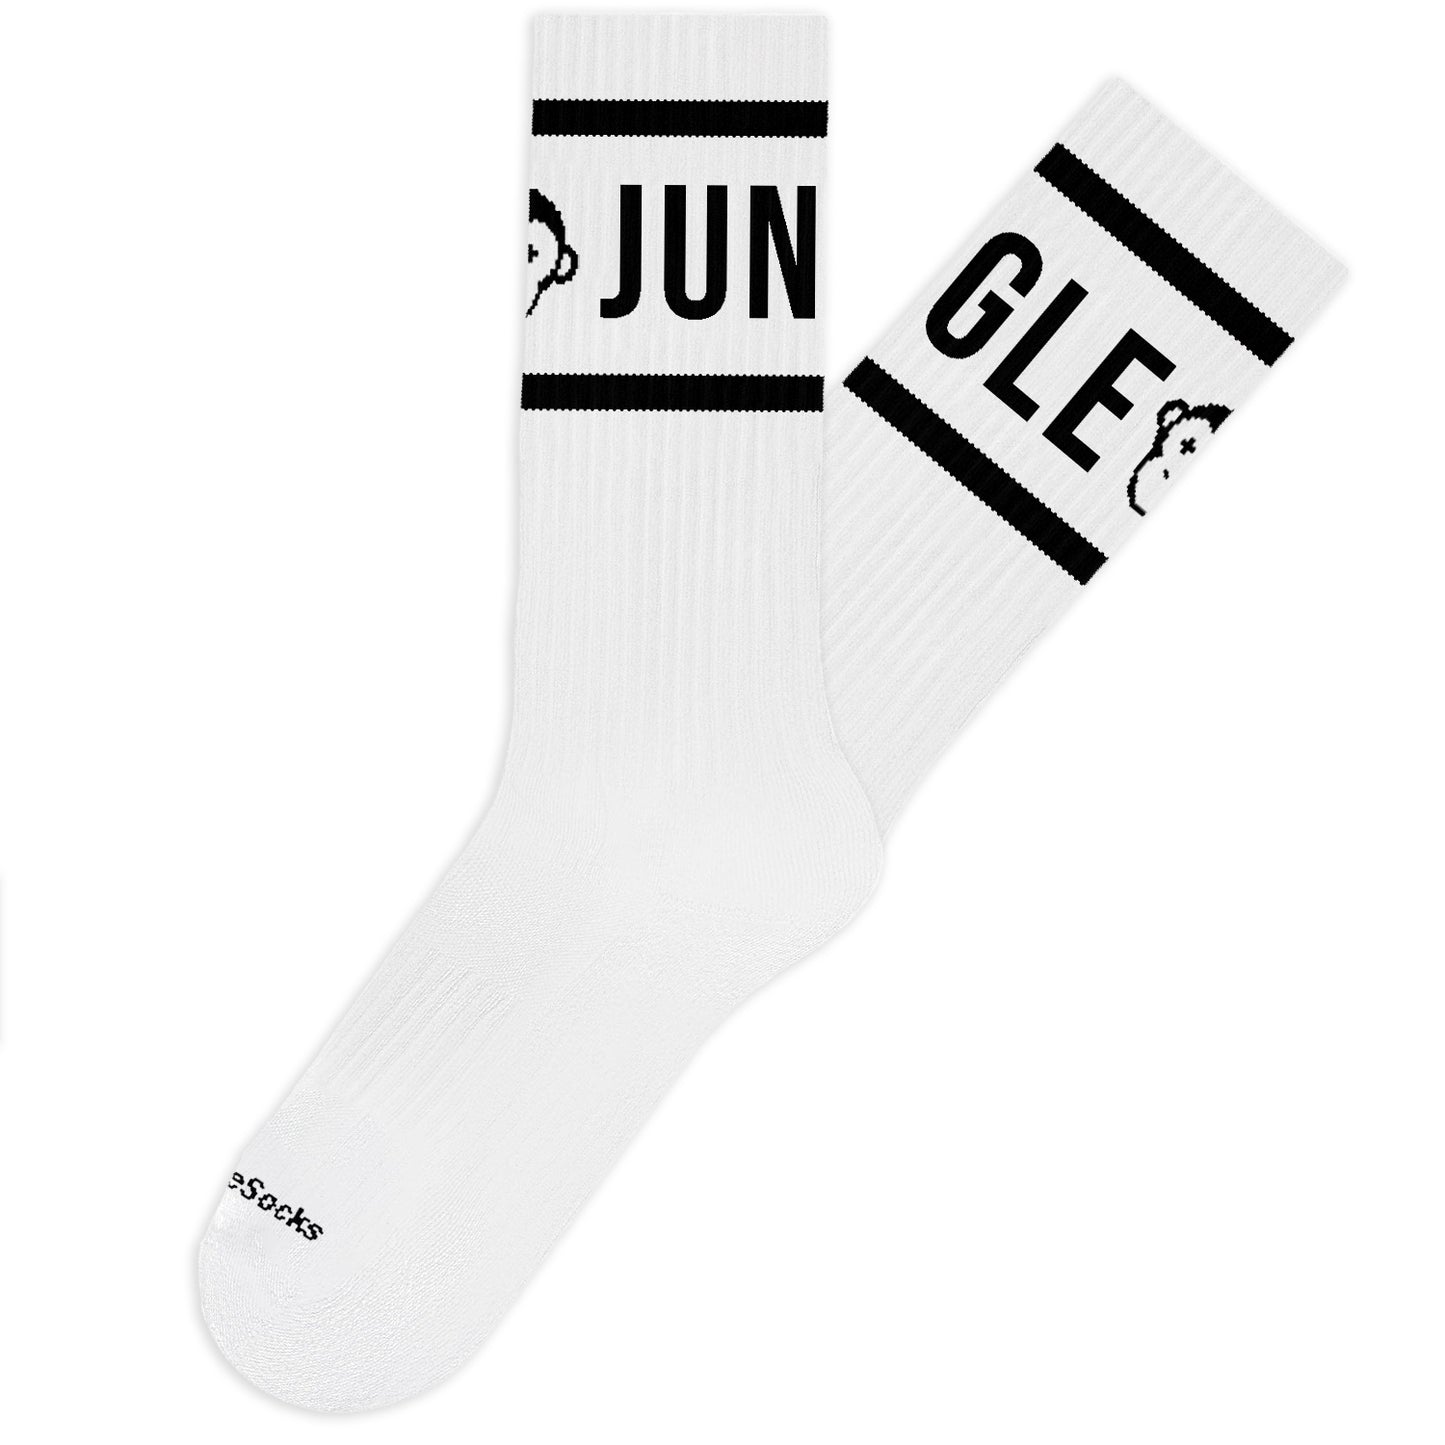 Calcetines altos blancos de algodón con rayas negras y diseño mono logo Jungle